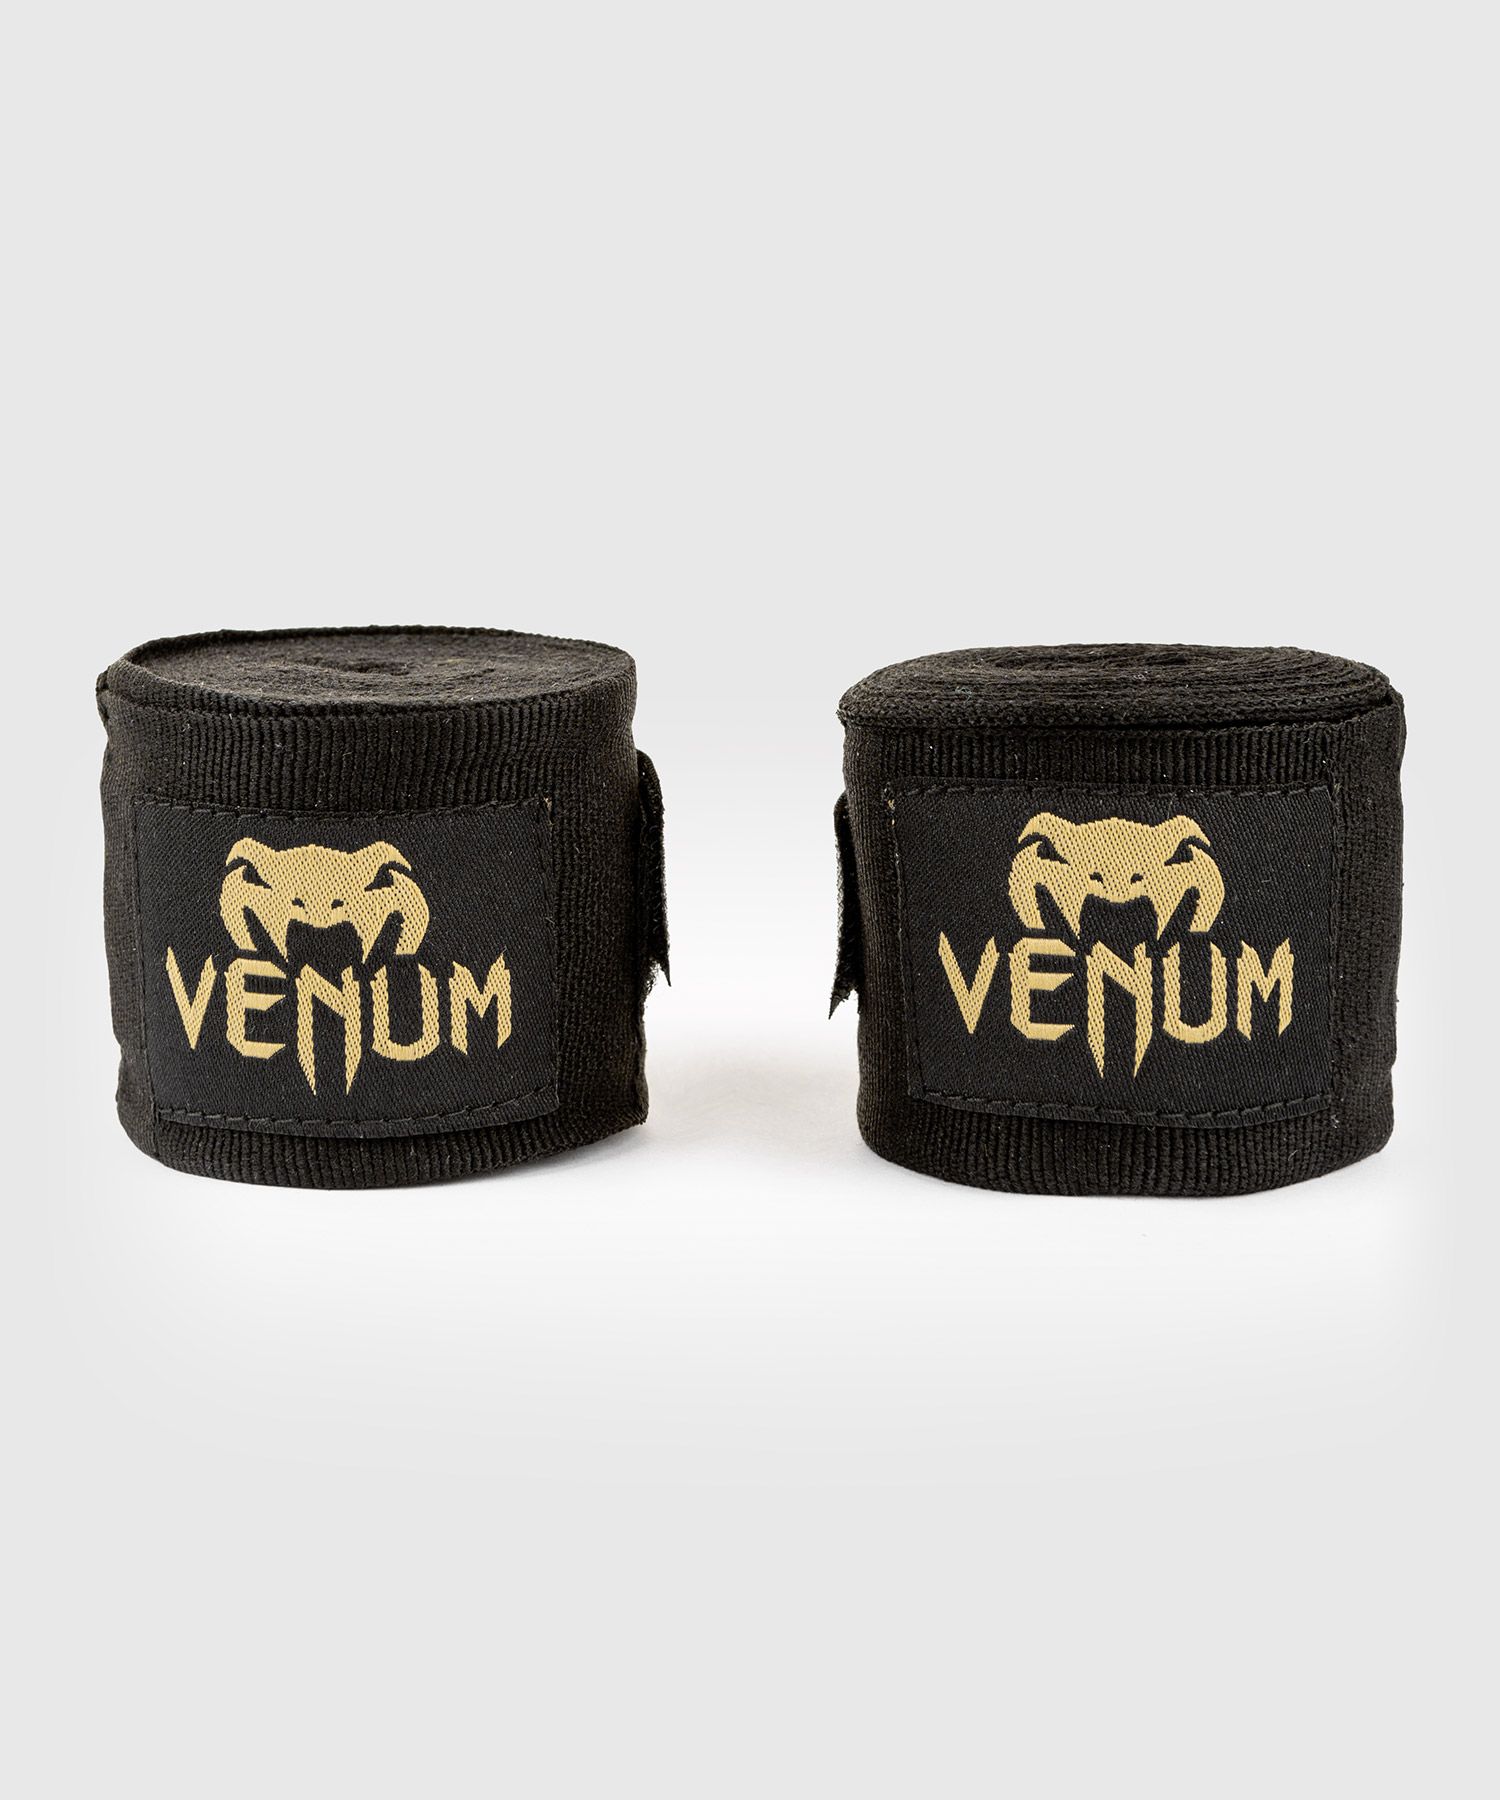 Bandages de Boxe Venum Kontact - 4.50 m - Noir/Or